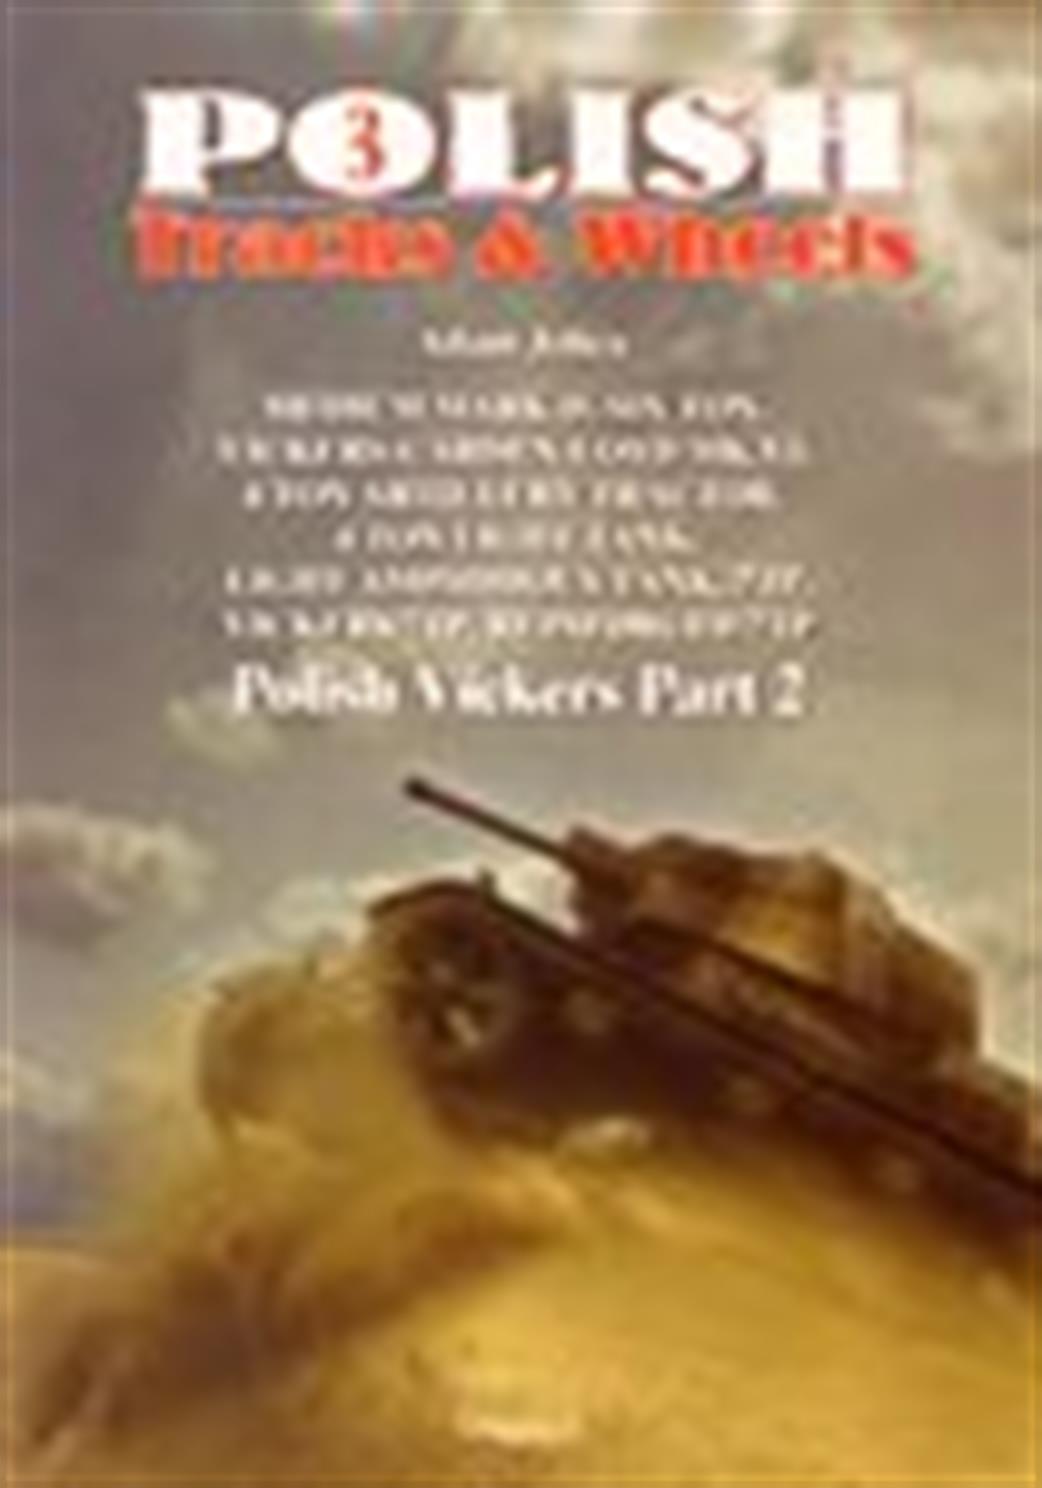 9788361421504 Polish Tracks & Wheels 3